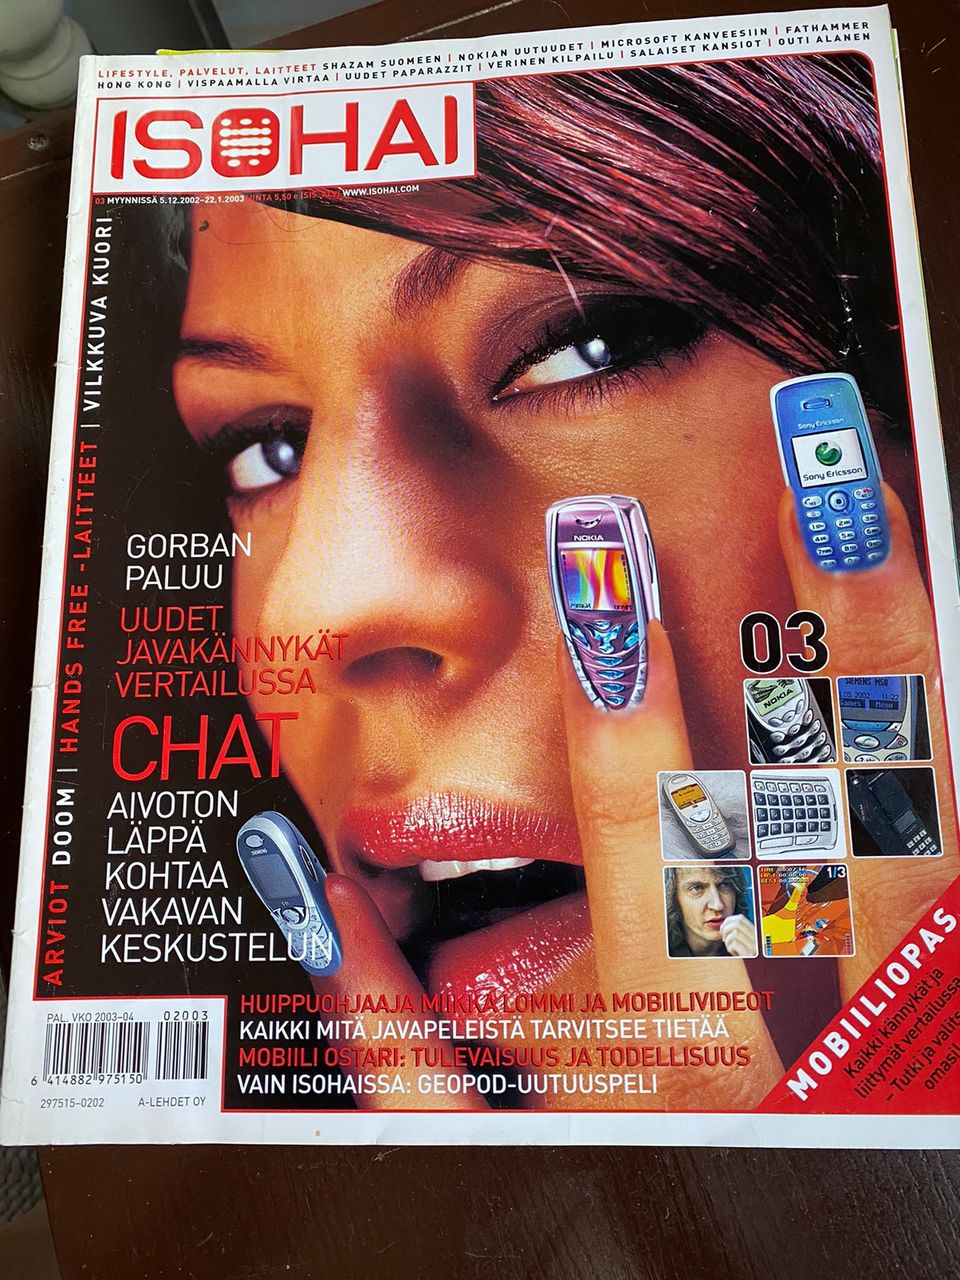 ISOHAI lifestyle lehti vuodelta 2002